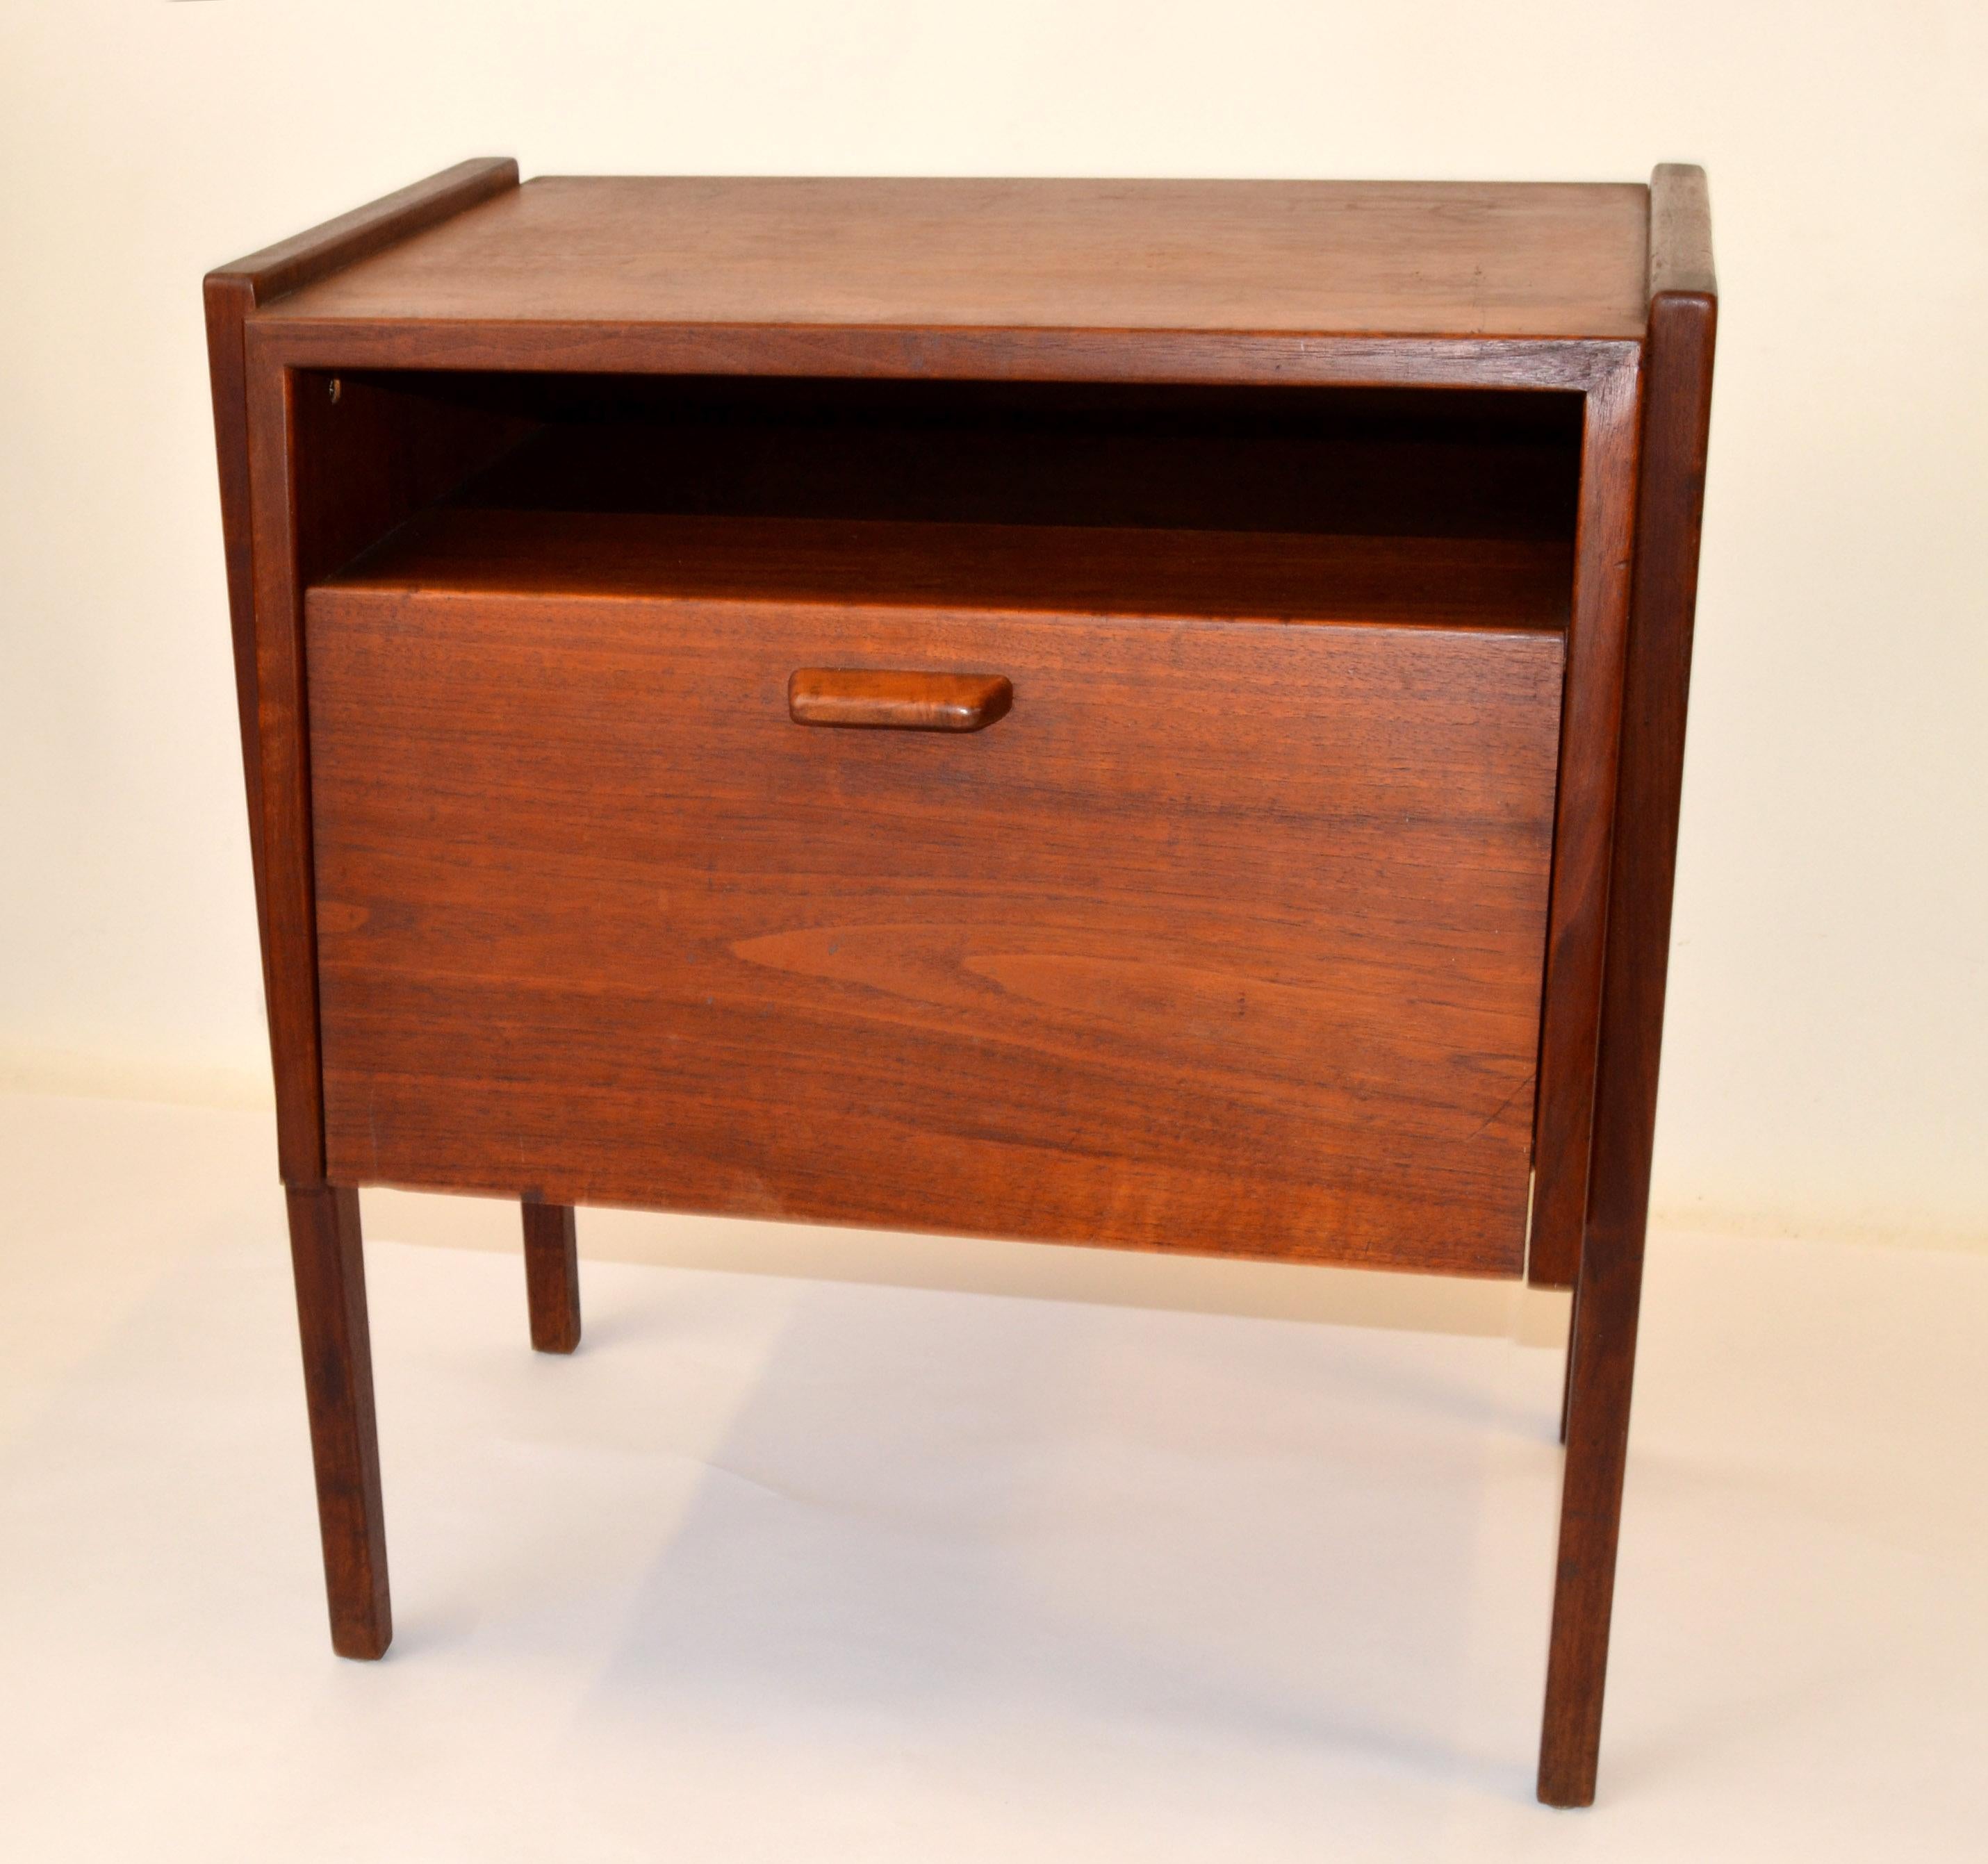 1950 Jens Risom a conçu une table de nuit, une table de chevet ou une table d'appoint en noyer pour Knoll.
Elle est dotée d'une porte coulissante et d'une étagère de rangement au-dessus, parfaitement adaptée au rangement des objets de première